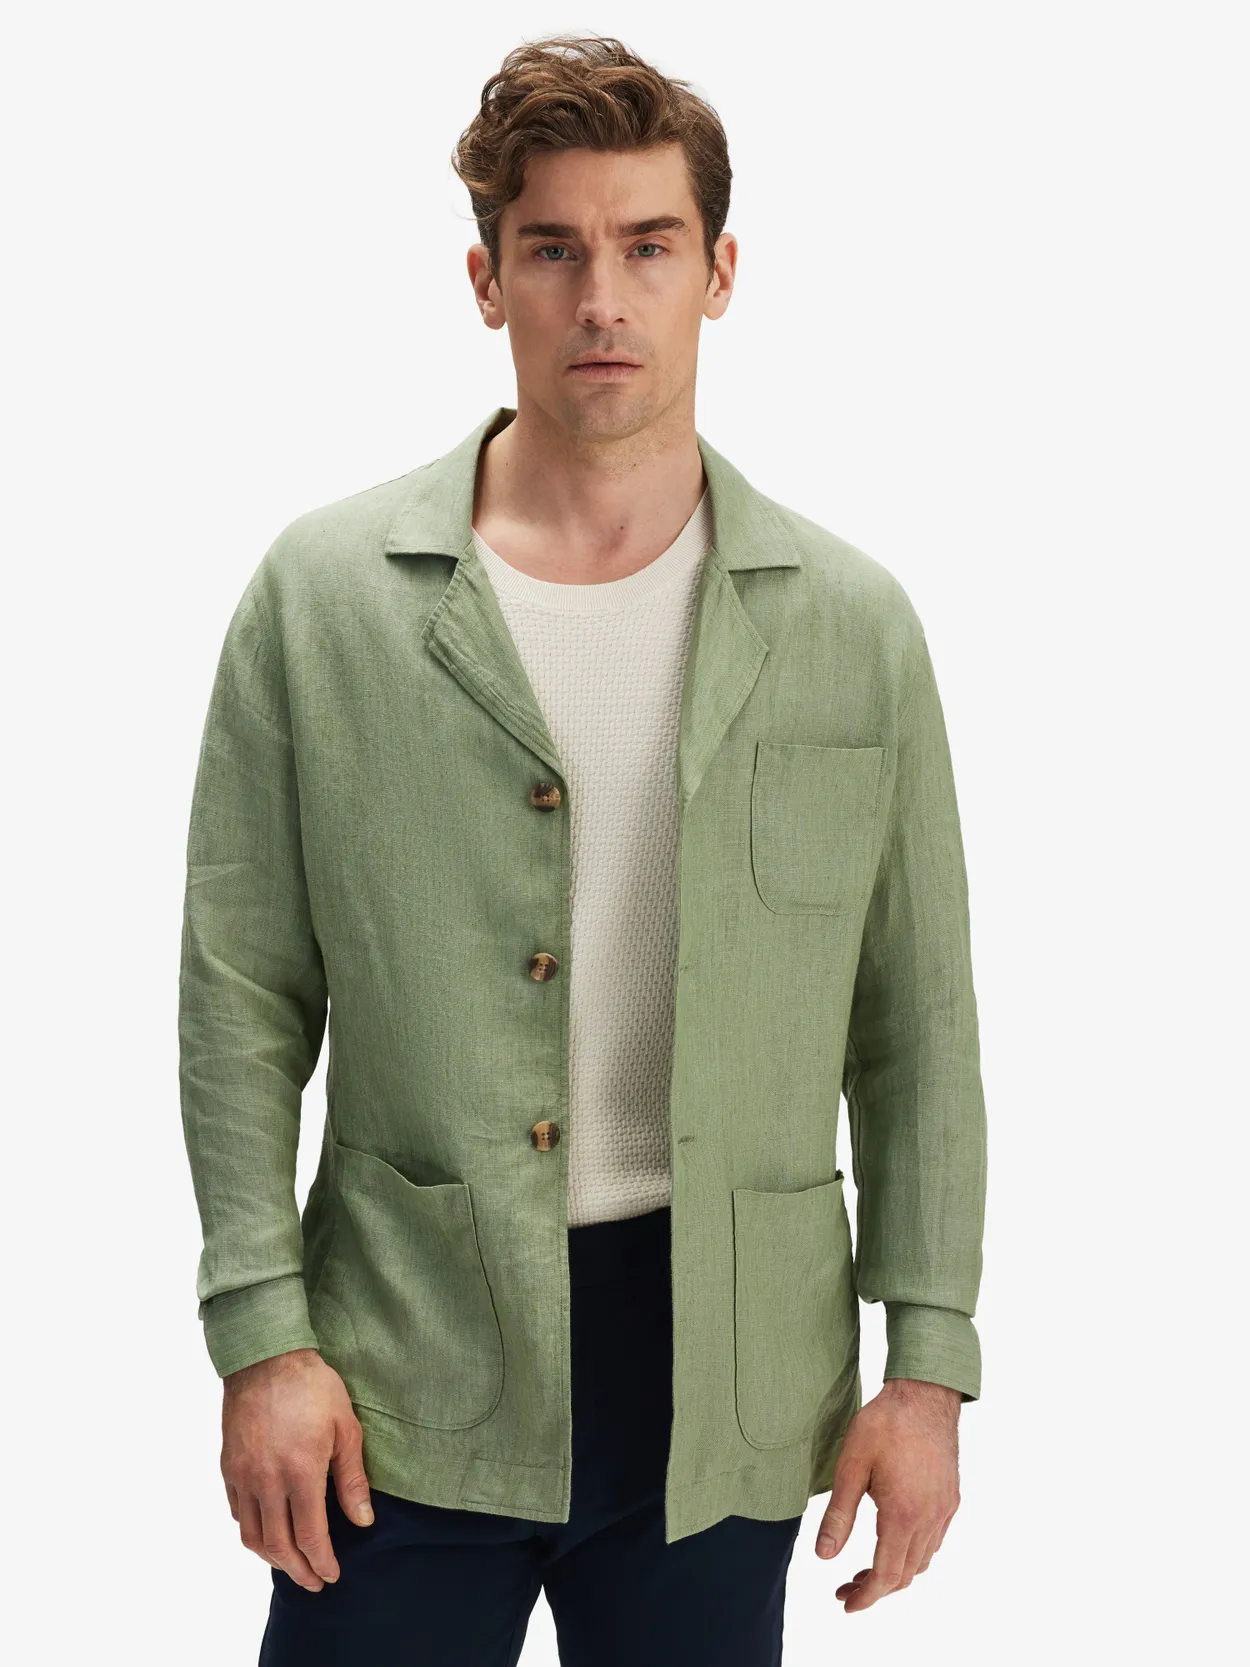 Green Linen Shirt Jacket